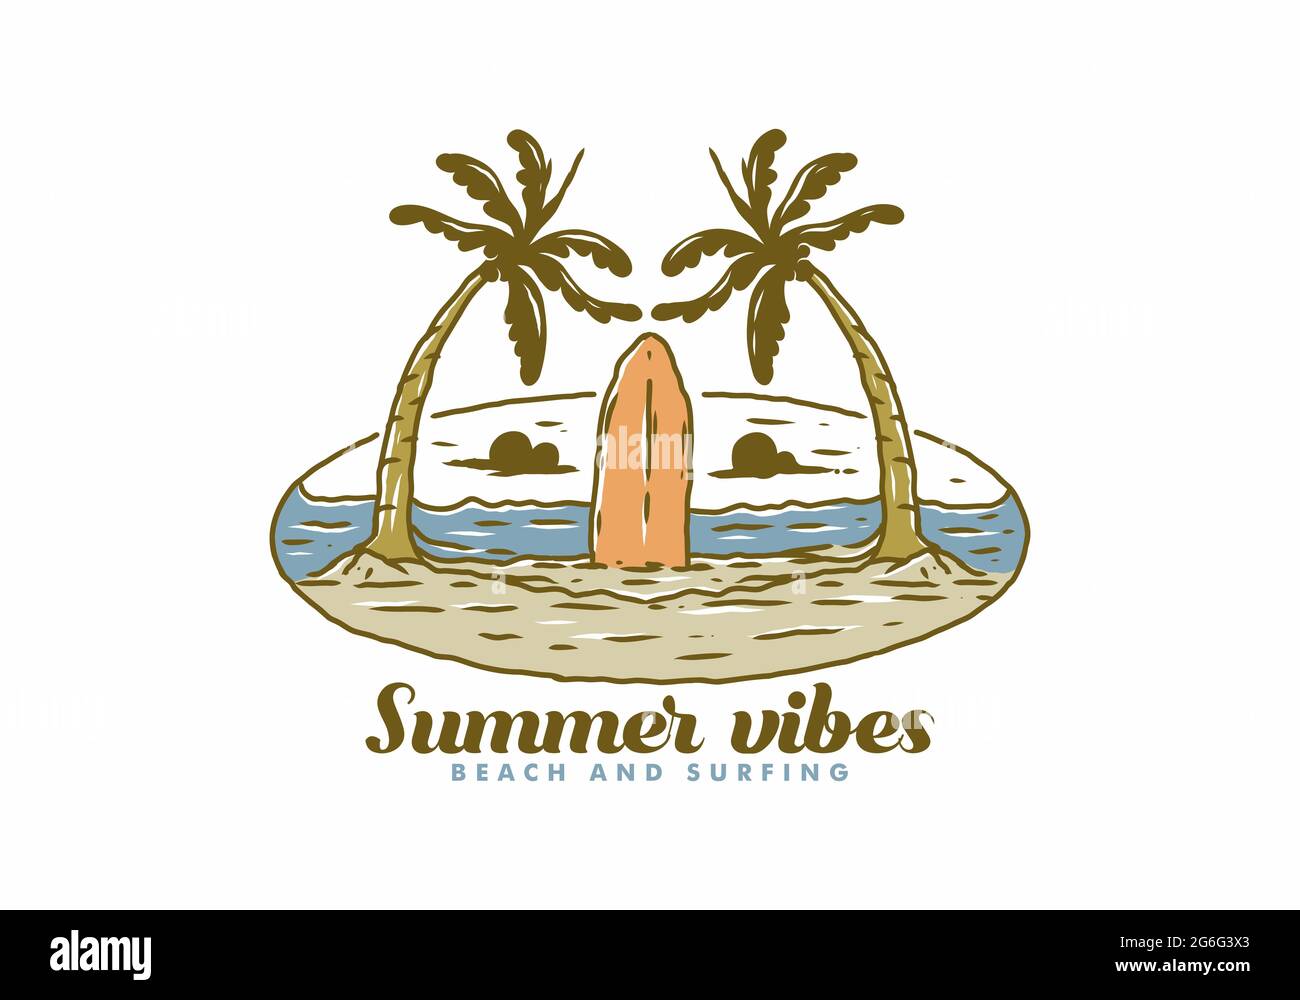 Bunte Illustration Zeichnung der Sommer Vibes Surfen Design Stock Vektor